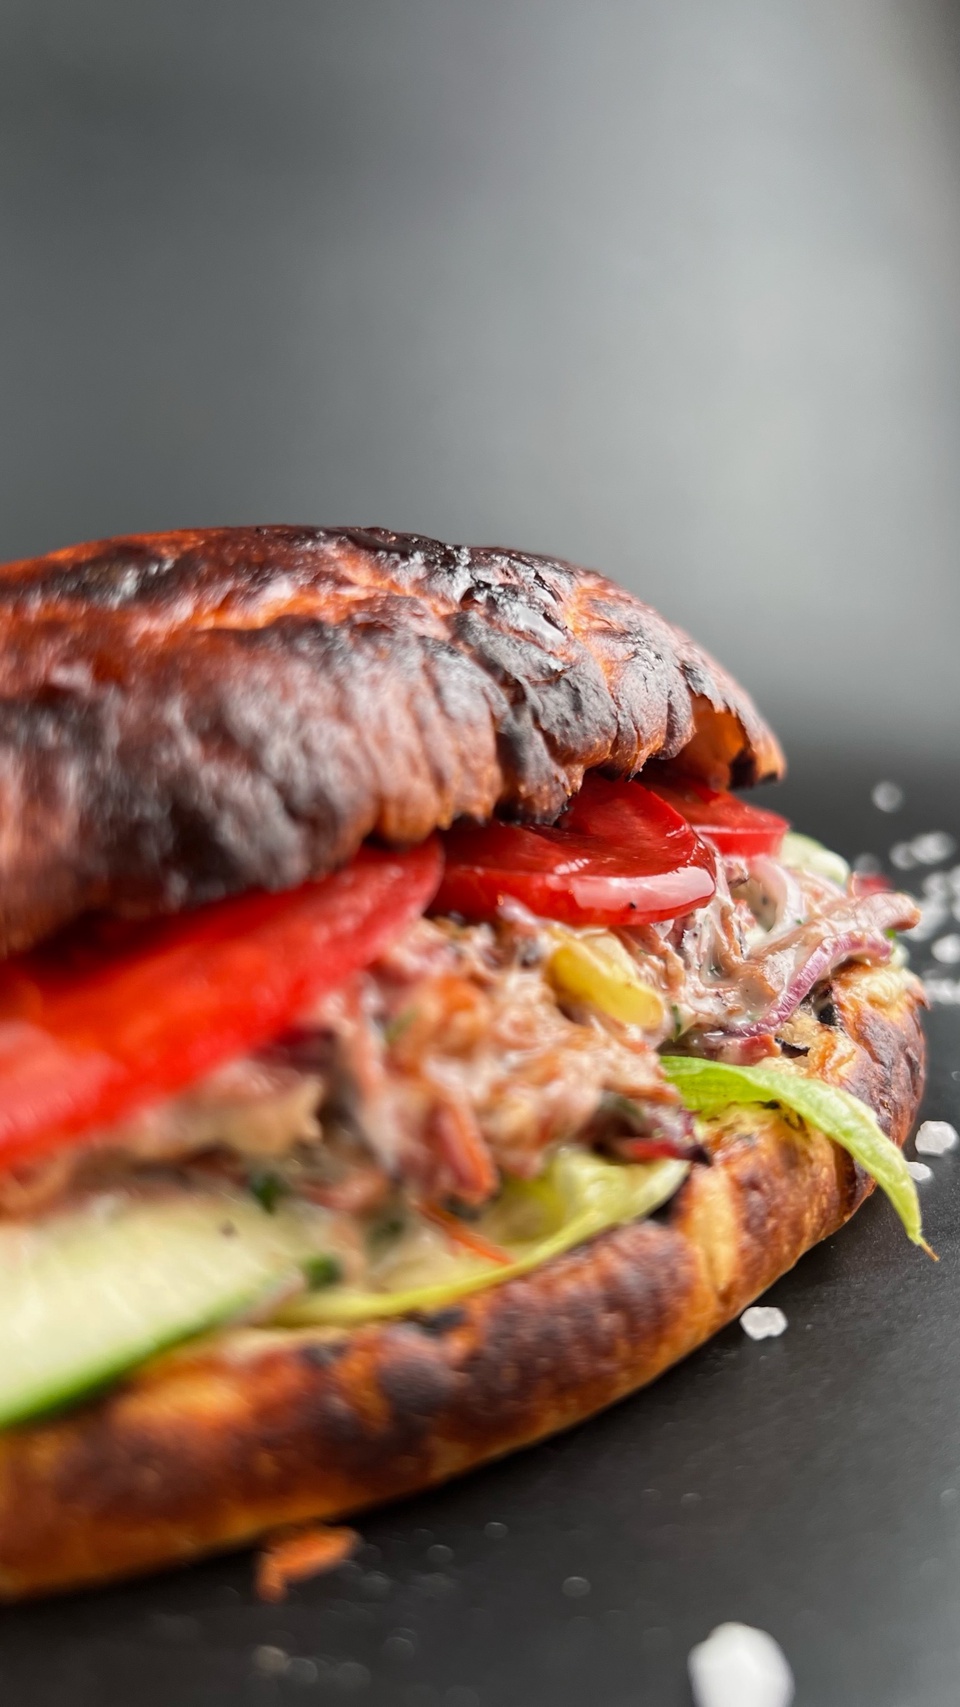 Бургер с рваной говядиной из смокера - 380 ₽, заказать онлайн.